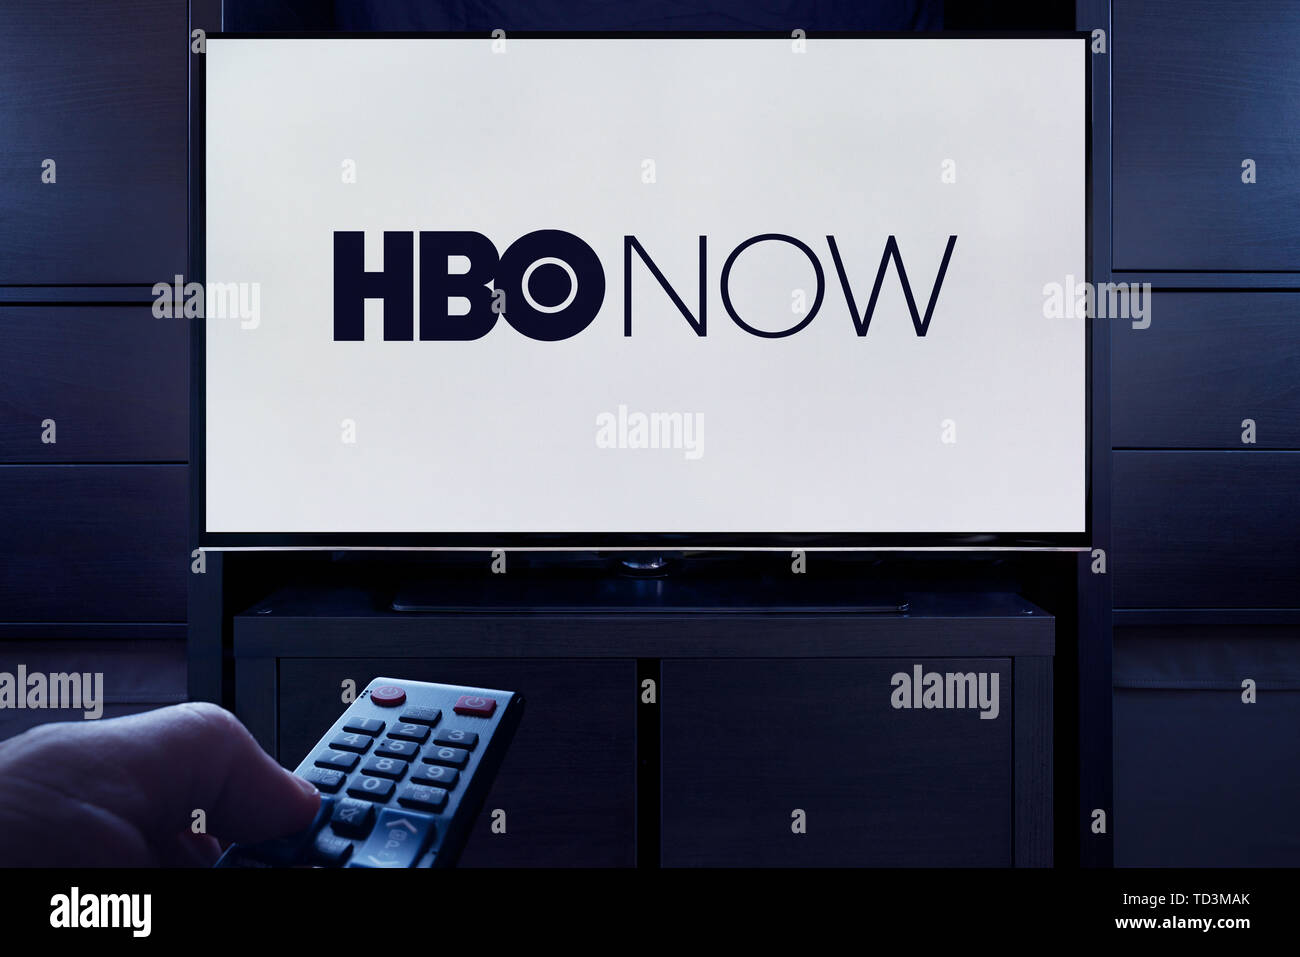 Un homme d'un points TV remote à la télévision qui affiche le logo de l'HBO on demand video streaming service (usage éditorial uniquement). Banque D'Images